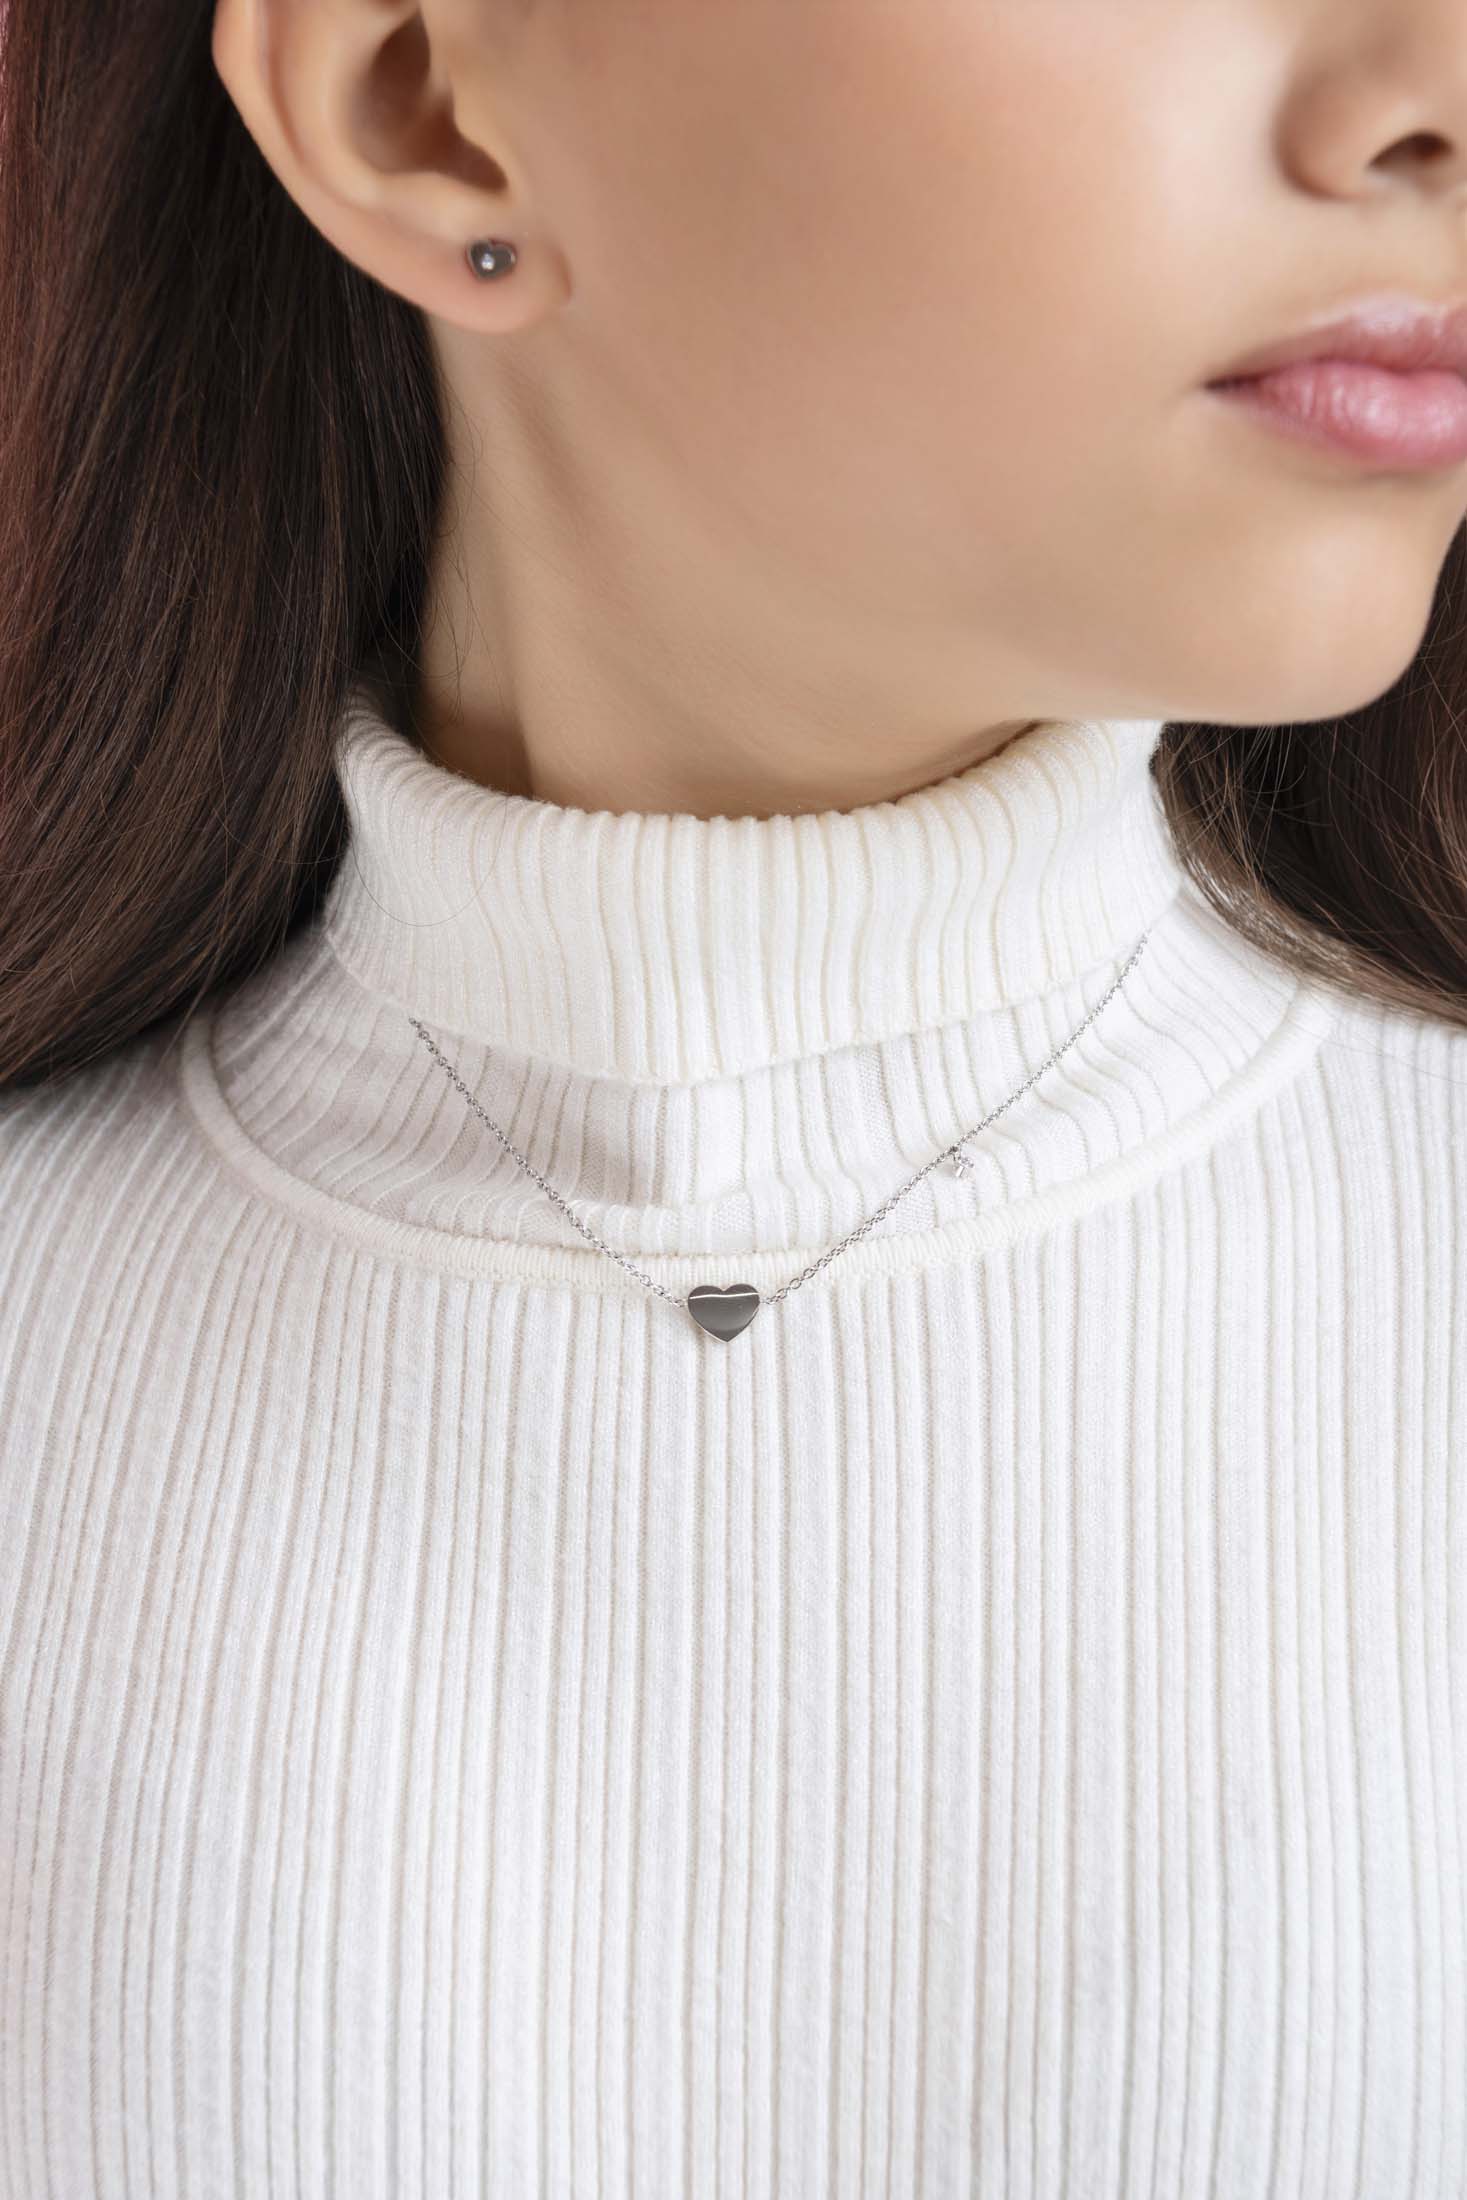 Petite Engravable Heart Silver Necklace